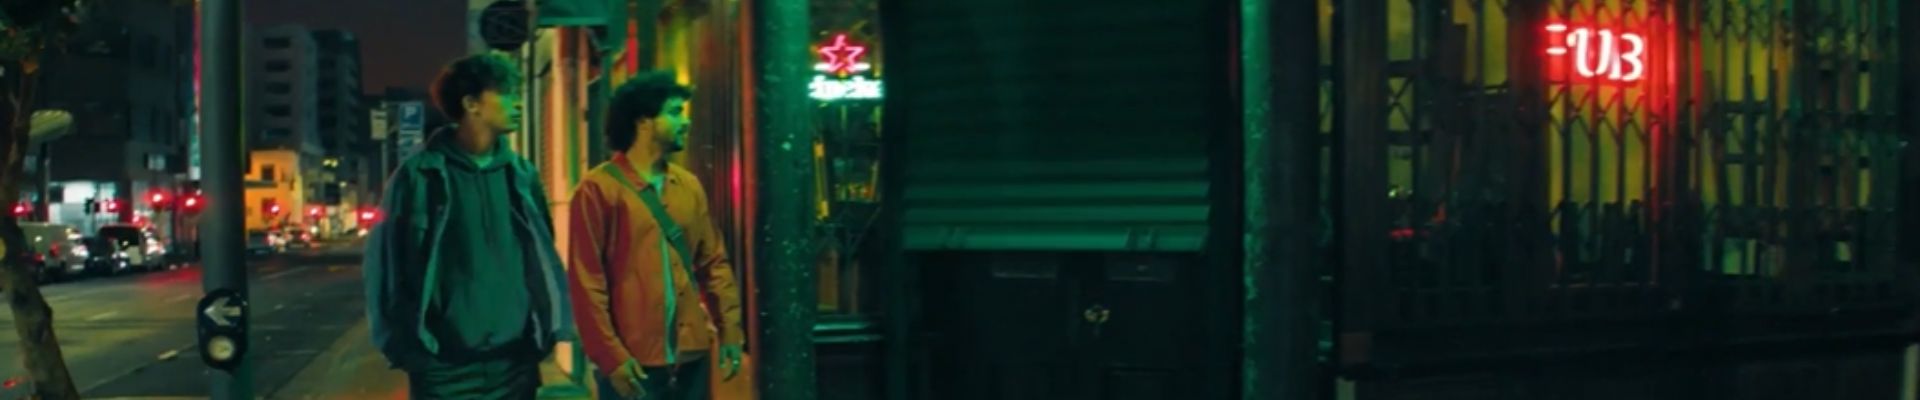 Heineken apresenta “O Sabor de Heineken”, primeiro filme da campanha global da marca